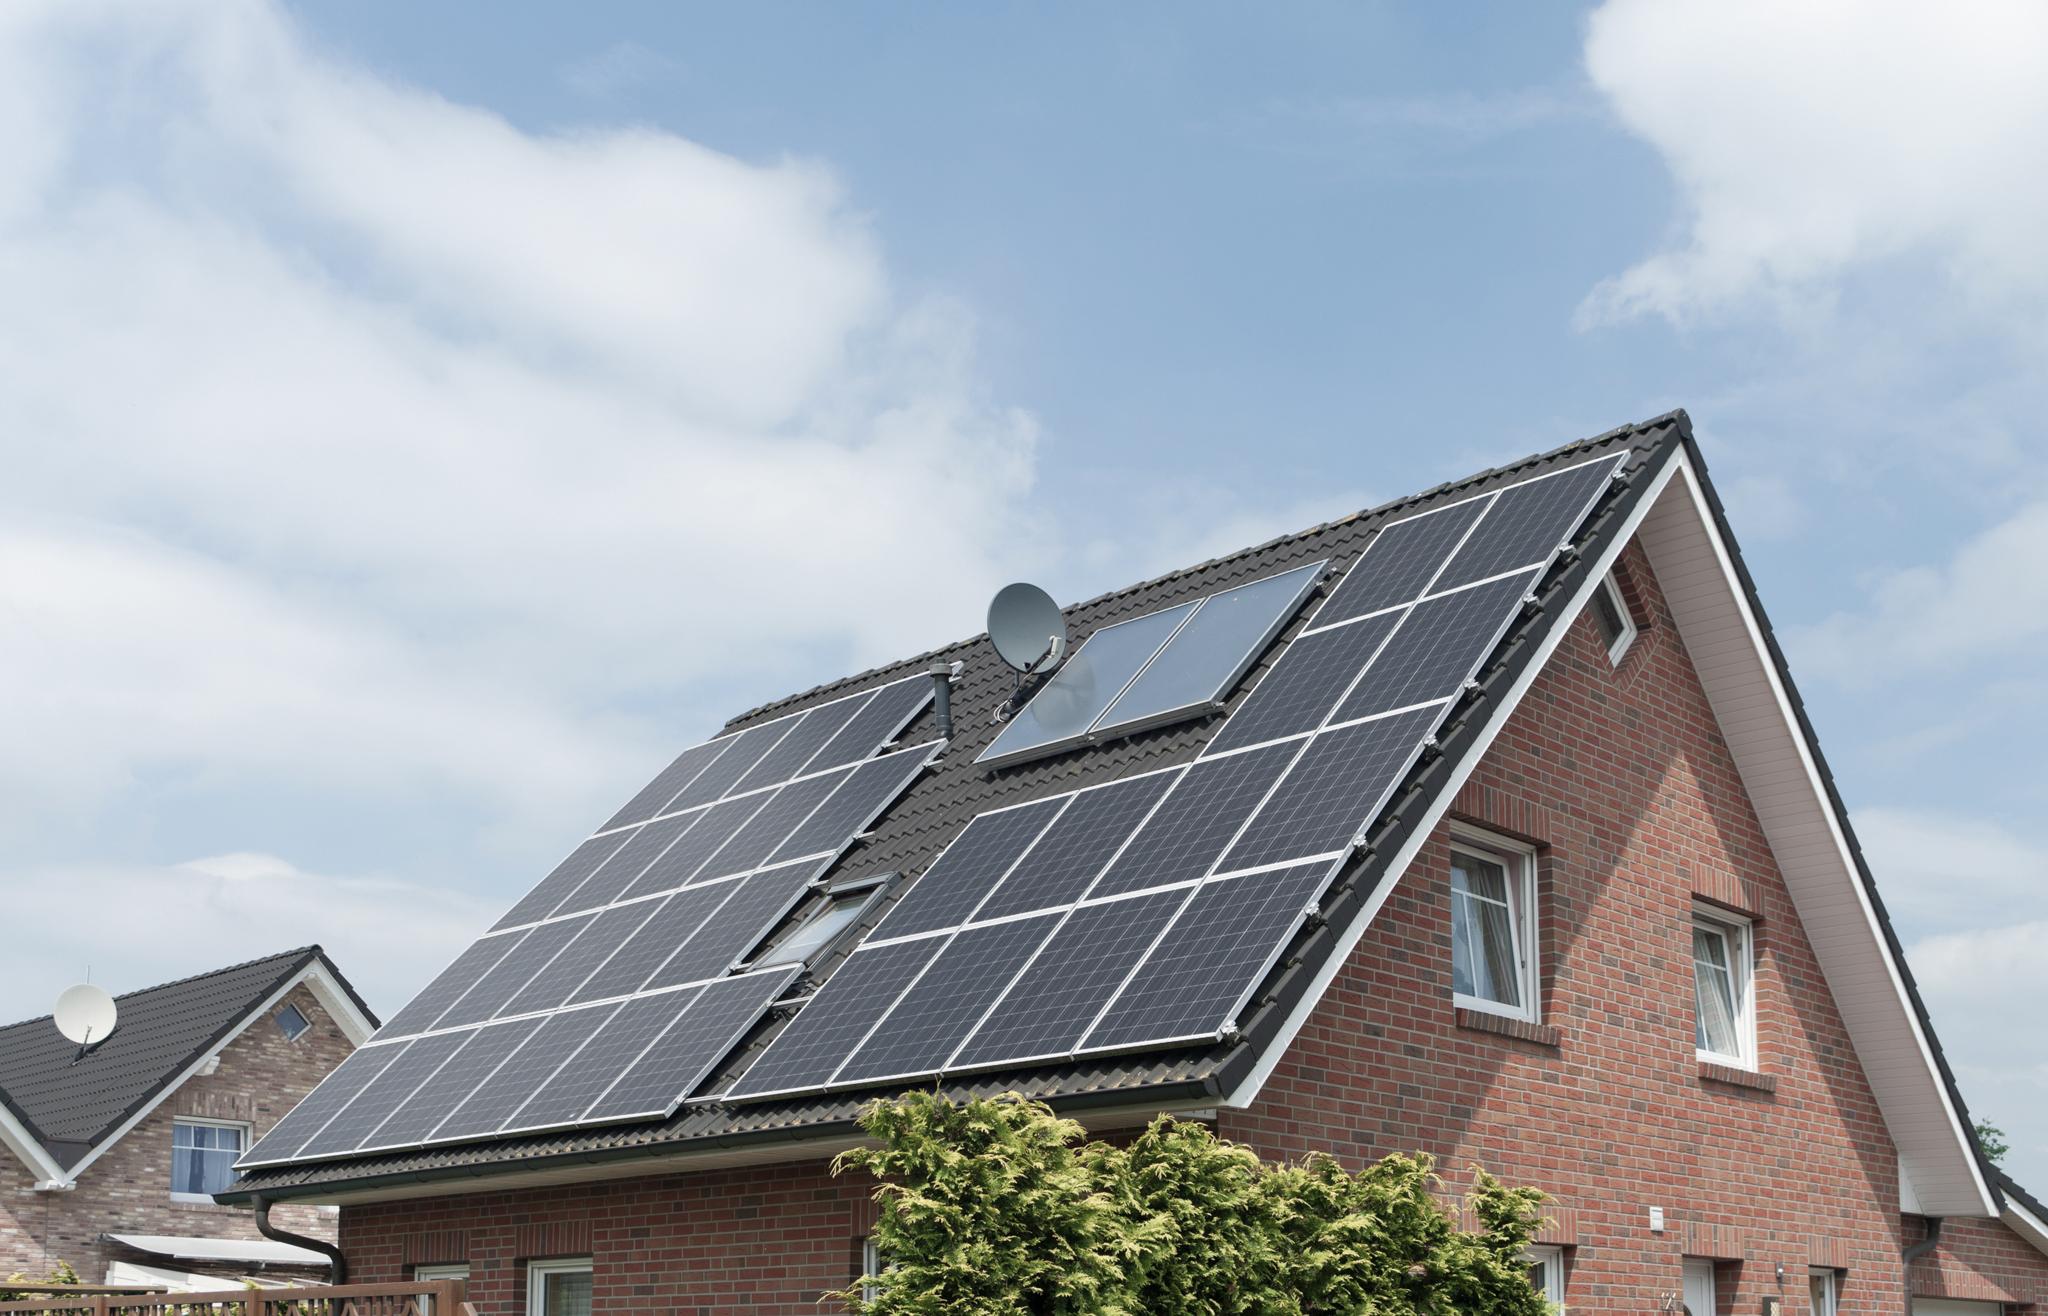 Einfamilienhaus mit Photovoltaikanlage – Städtische Förderprogramme in NRW